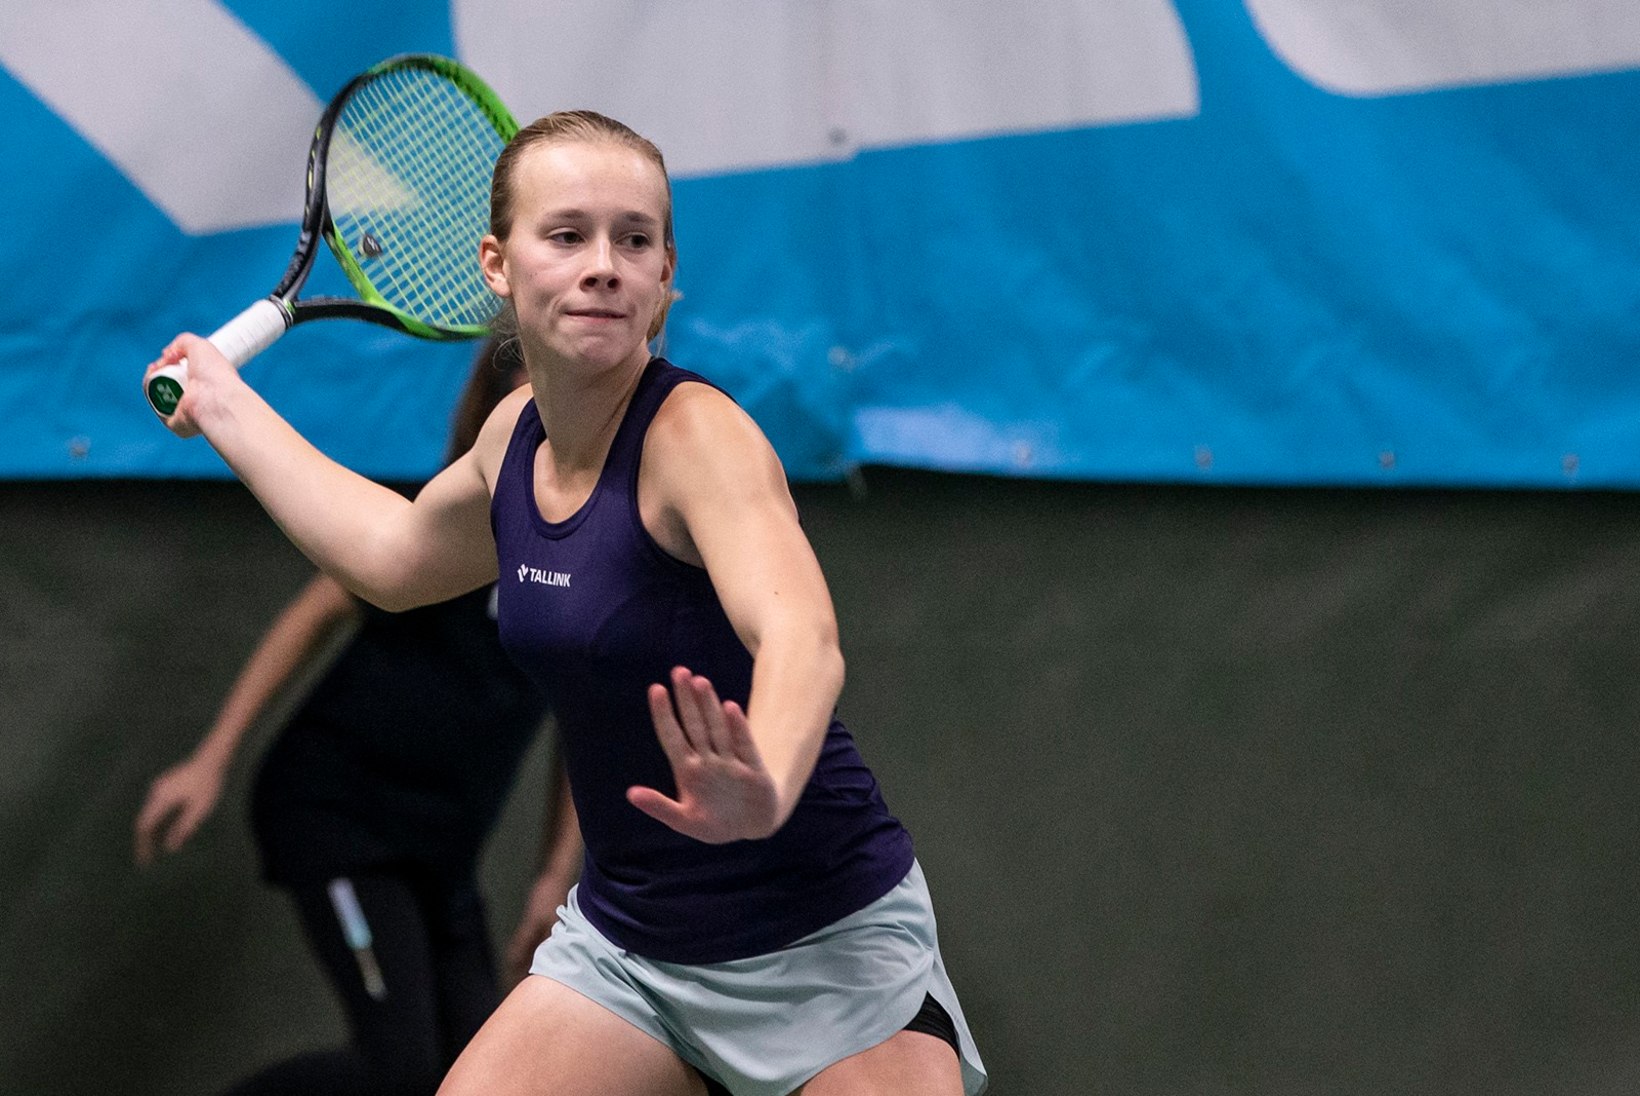 LUBAV! Eesti naiste tennise kolmas reket teenis kuuajalise vahega juba teise turniirivõidu